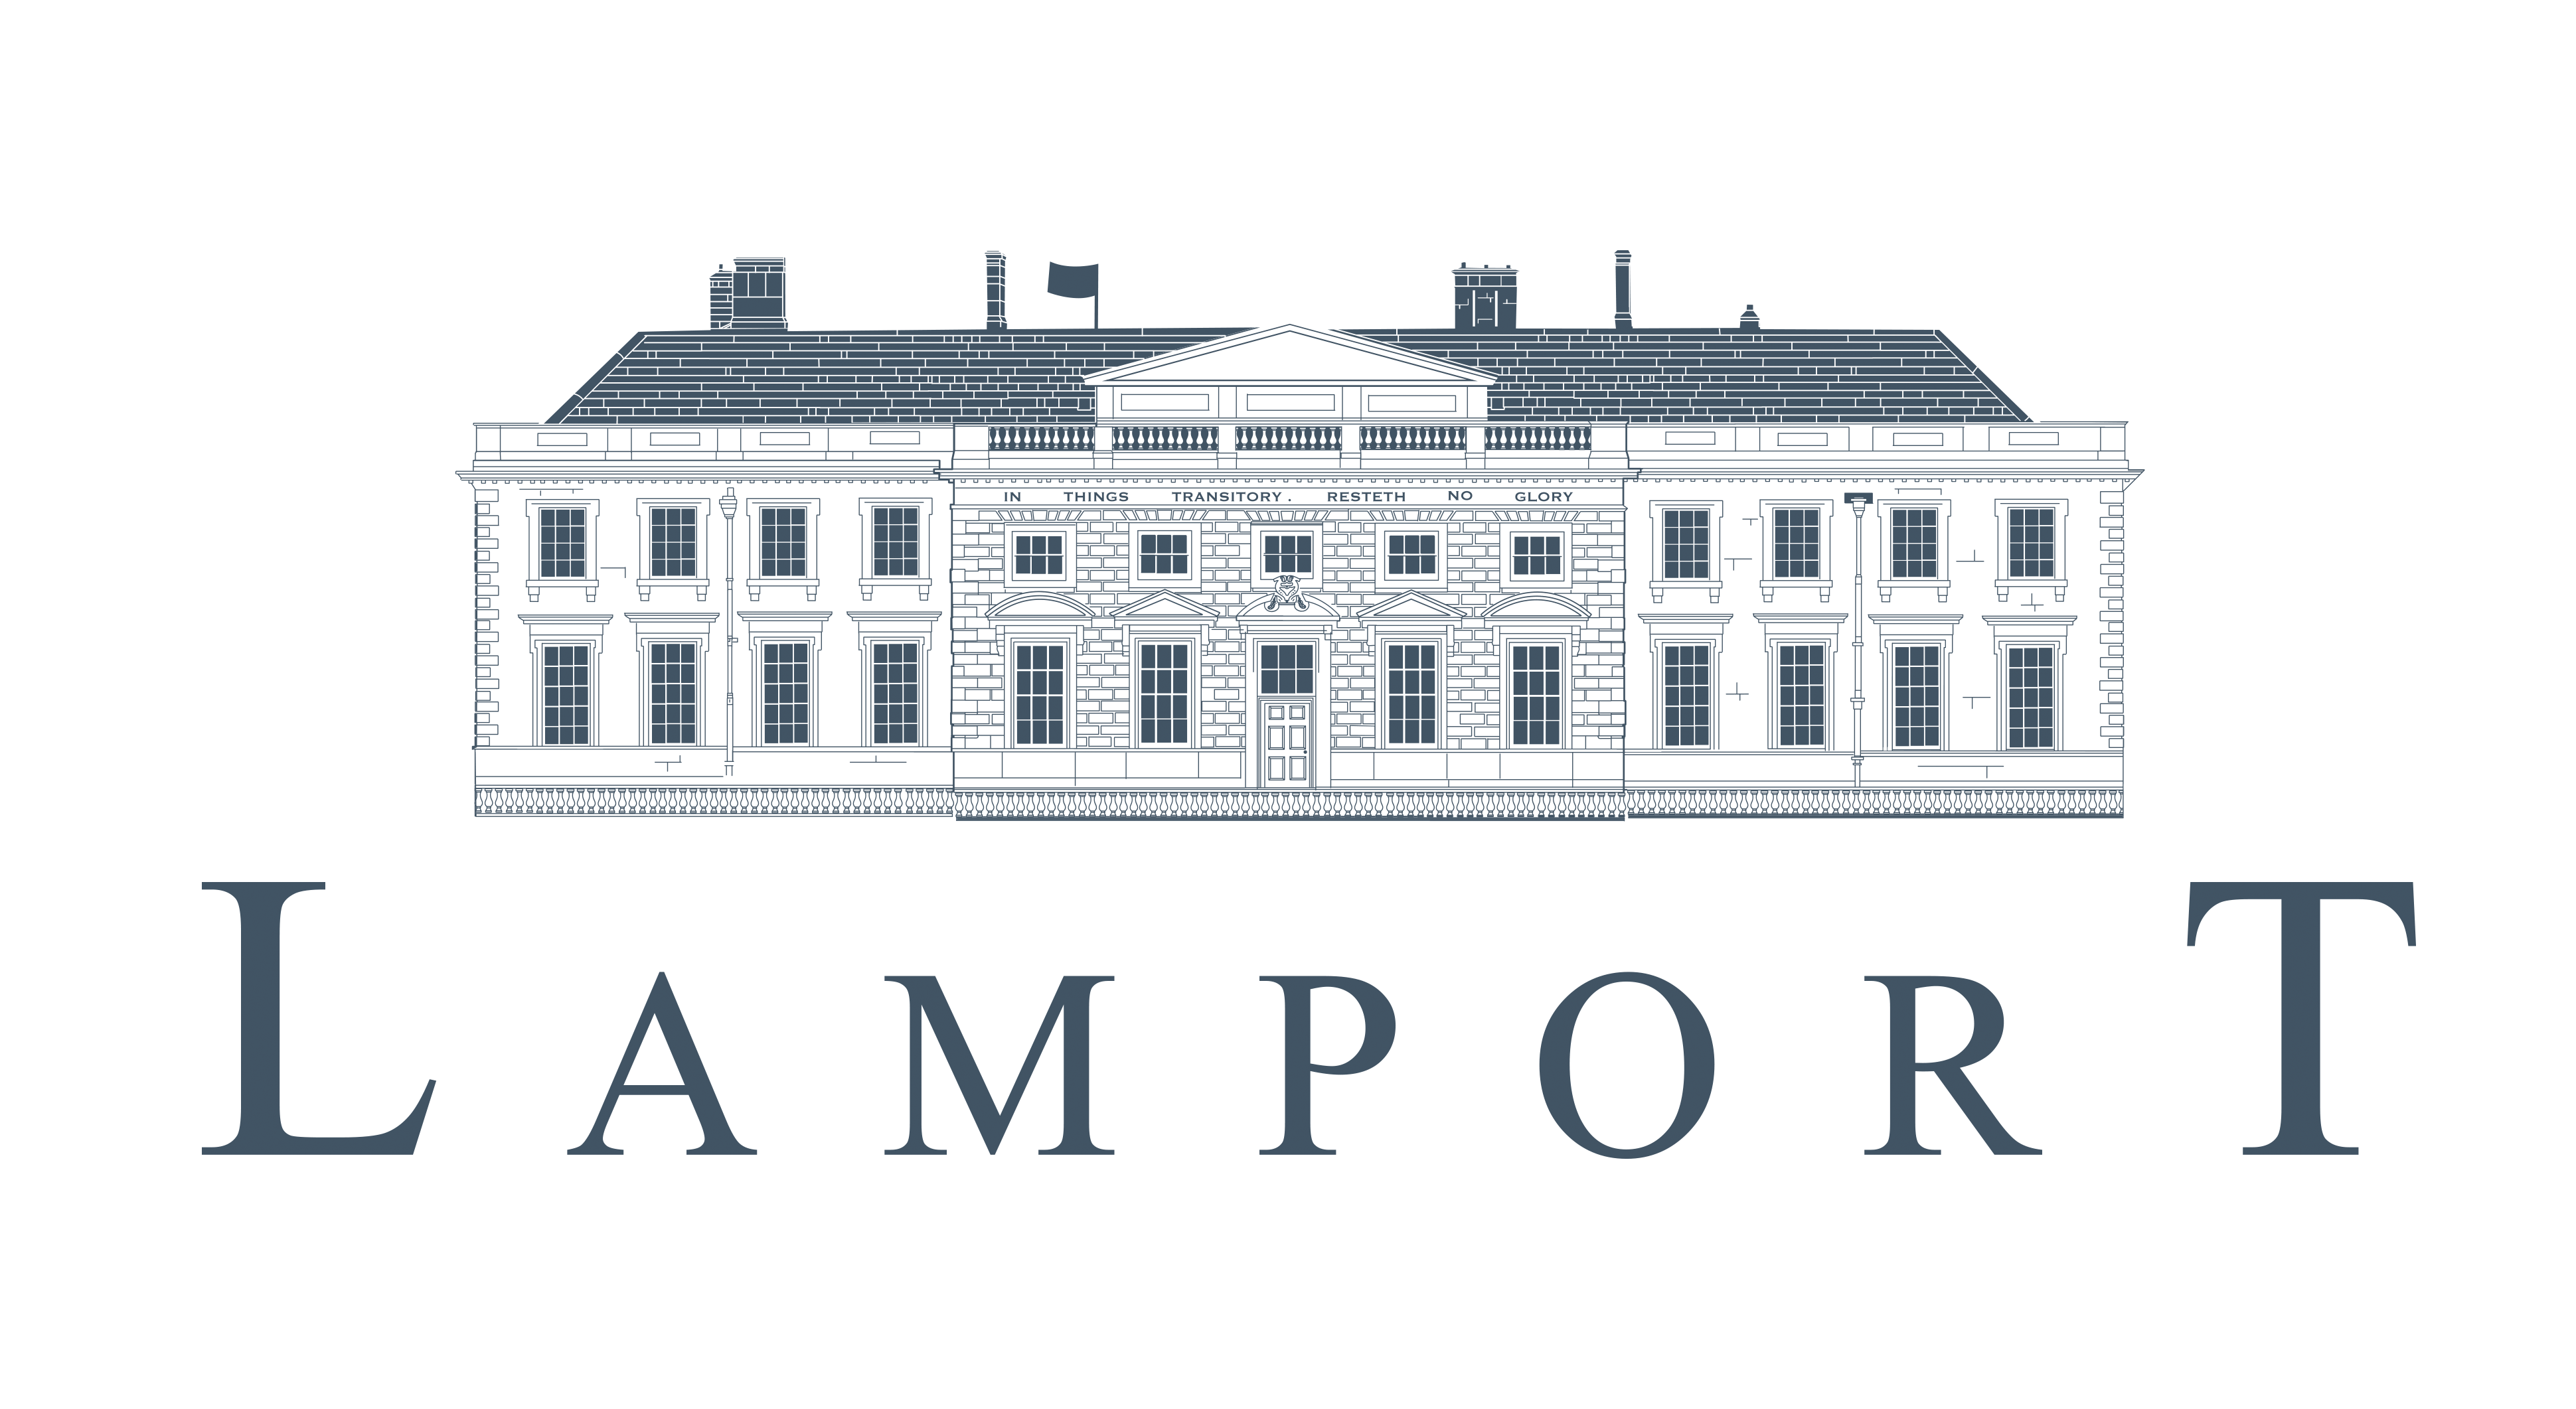 Lamport Hall